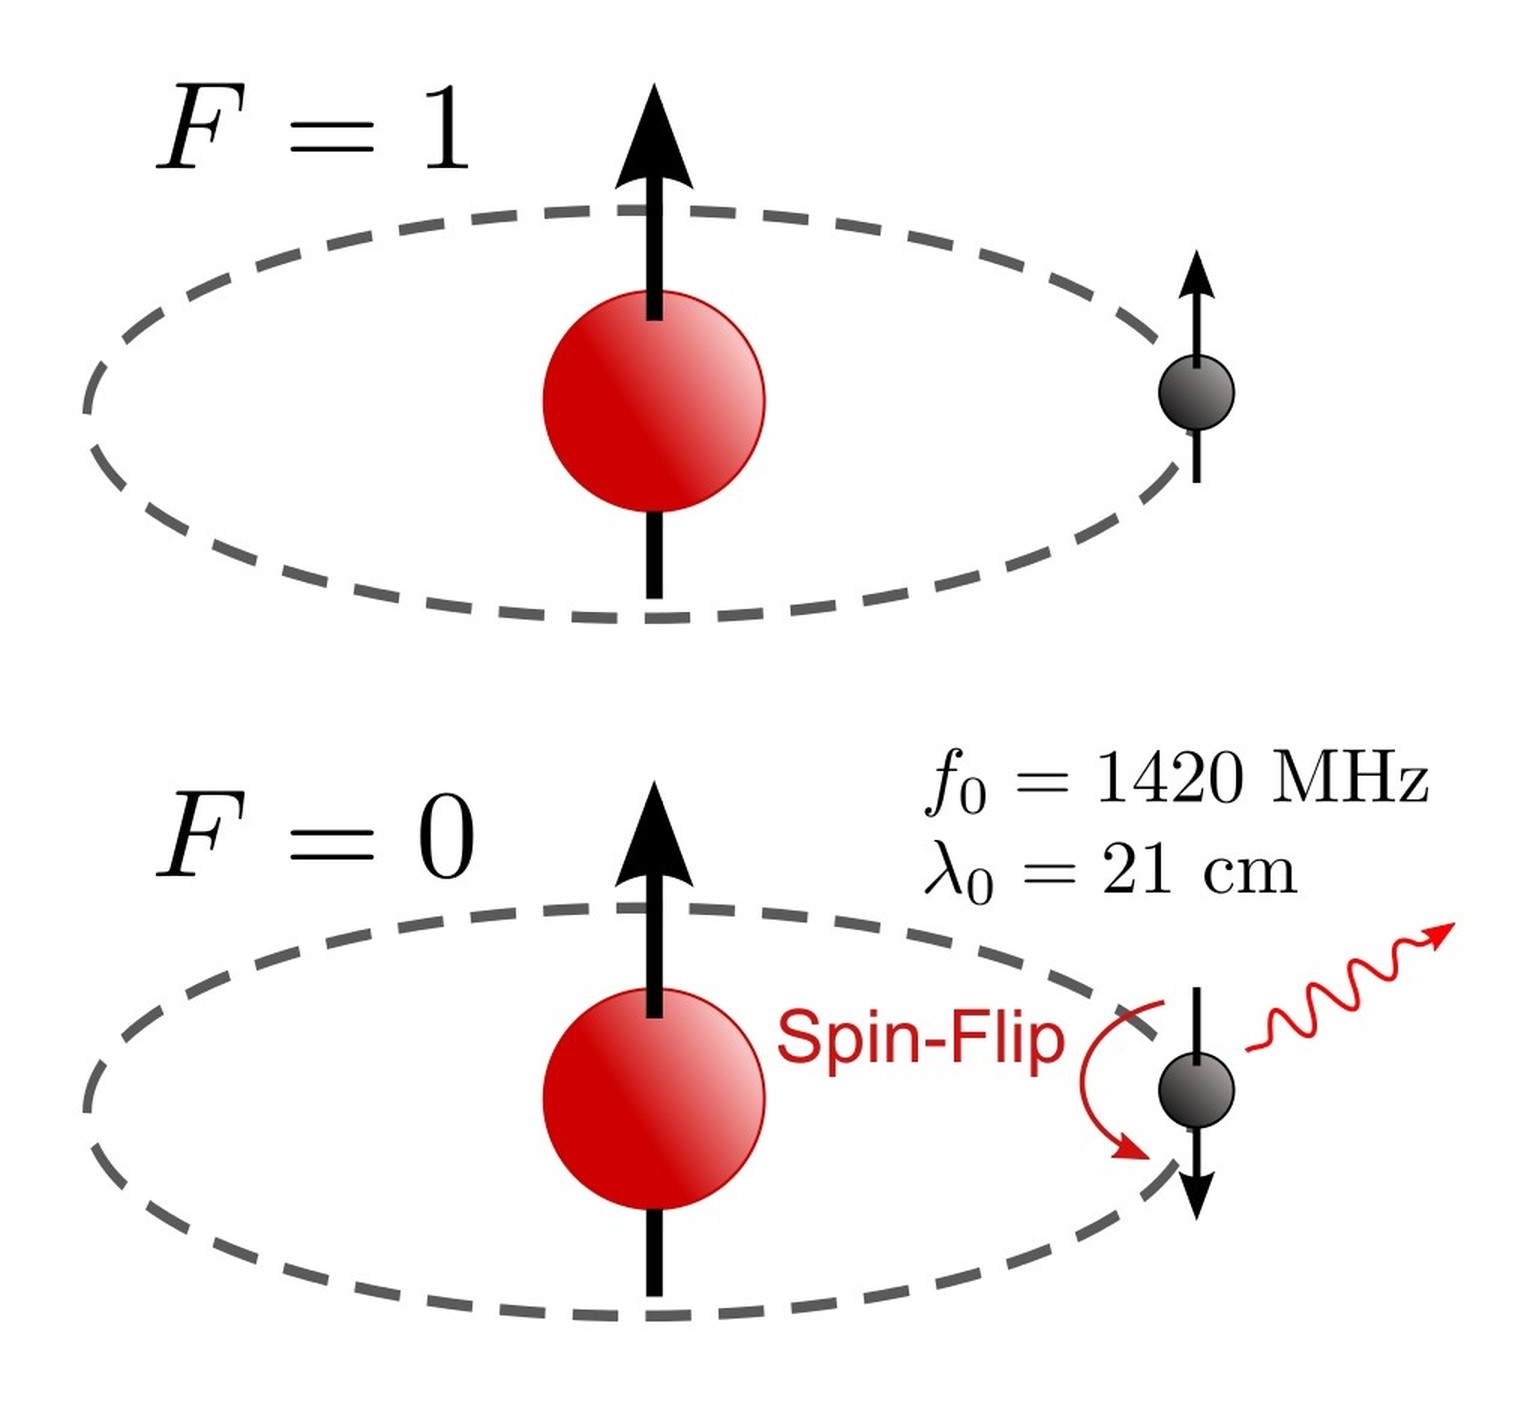 Wasserstoffatom mit paralleler (F = 1) und anti­paralleler (F = 0) Einstellung des Elektrons. Der Übergang wird als Spin-Flip bezeichnet.
https://de.wikipedia.org/wiki/HI-Linie#/media/Datei:Hydrogen-S ...